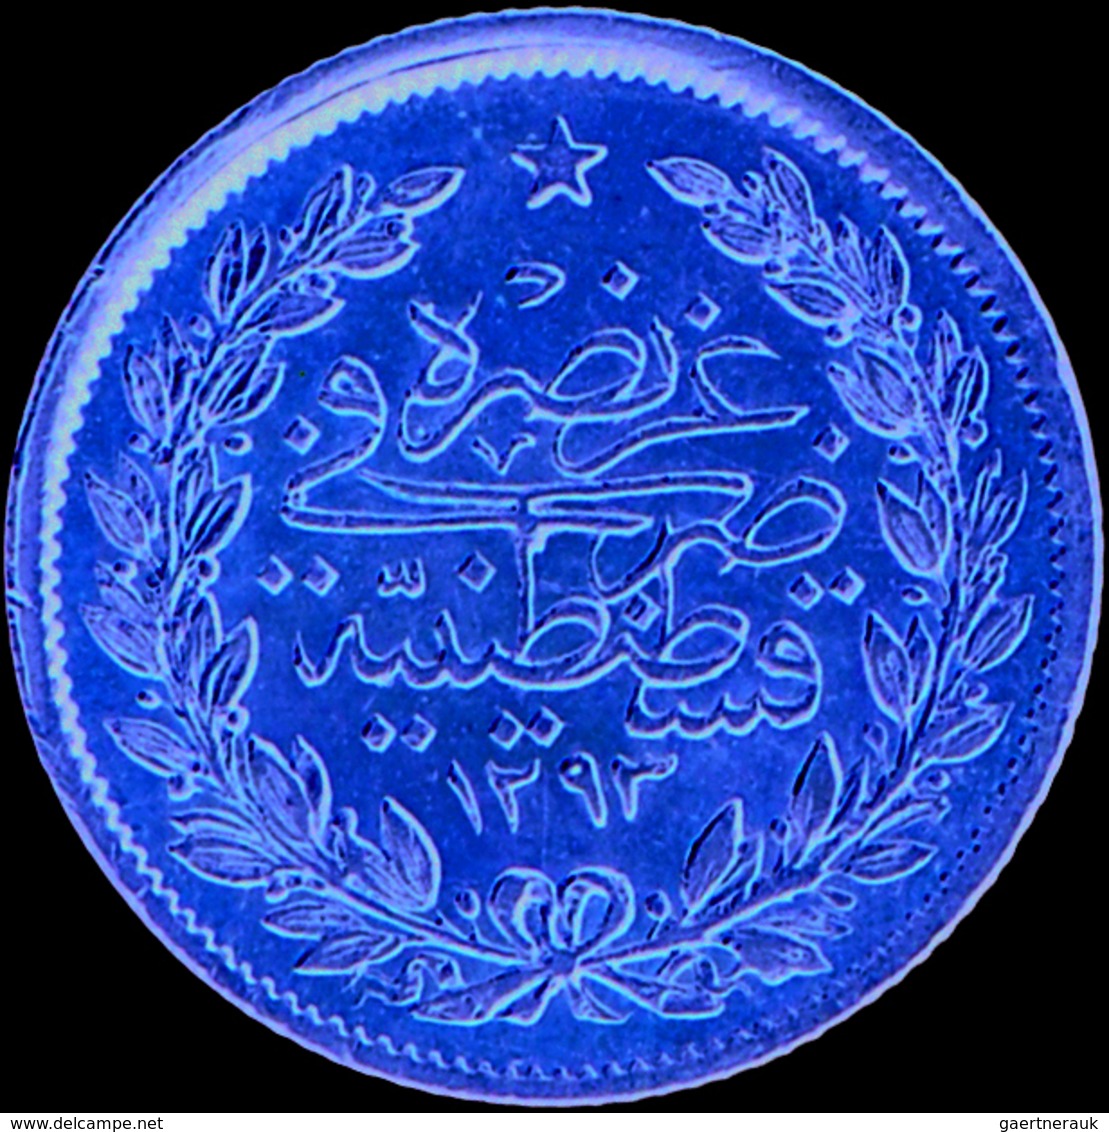 Türkei - Anlagegold: Abdul Hamid II. 1876-1909 (1293-1327 AH): 50 Kurush 1887 (AH 1293, Jahr 12), KM - Turkey